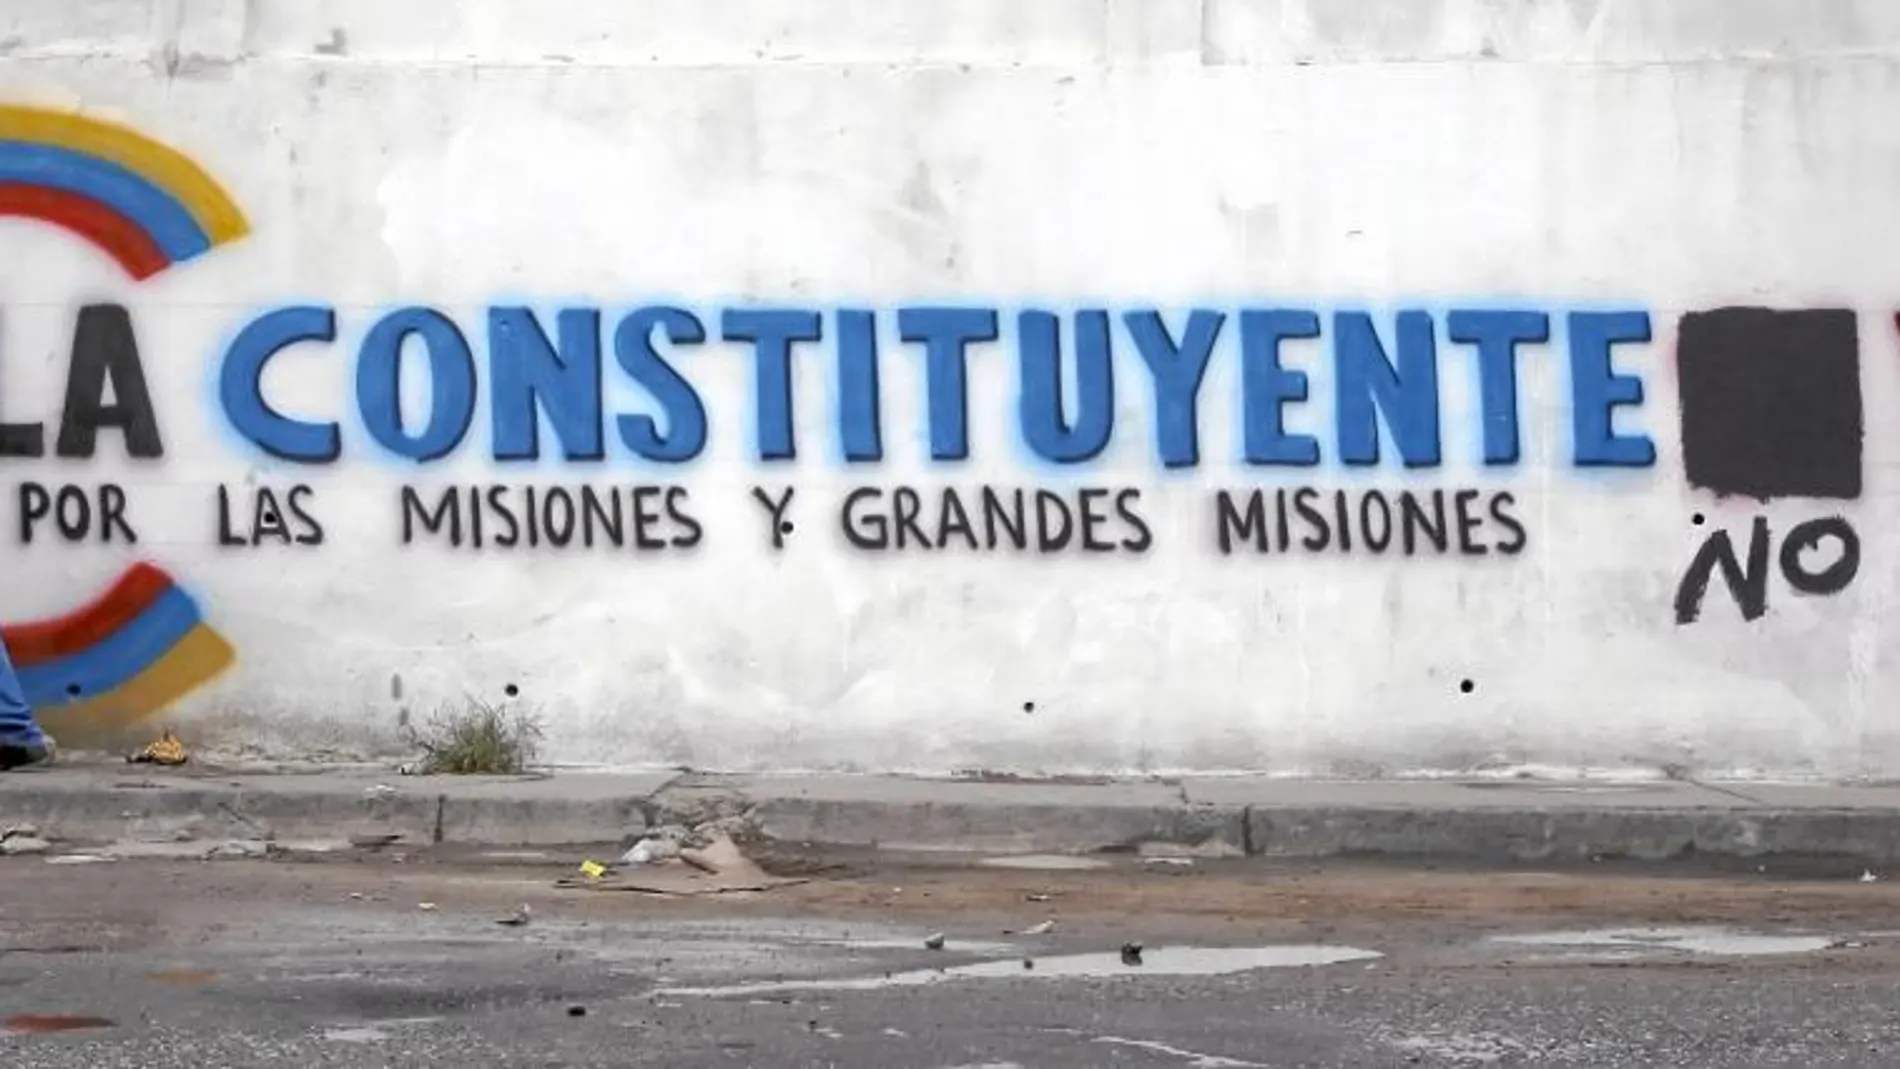 Un muro de Caracas muestra el eslogan del chavismo a favor de la Constituyente, que los opositores han modificado para mostrar su rechazo